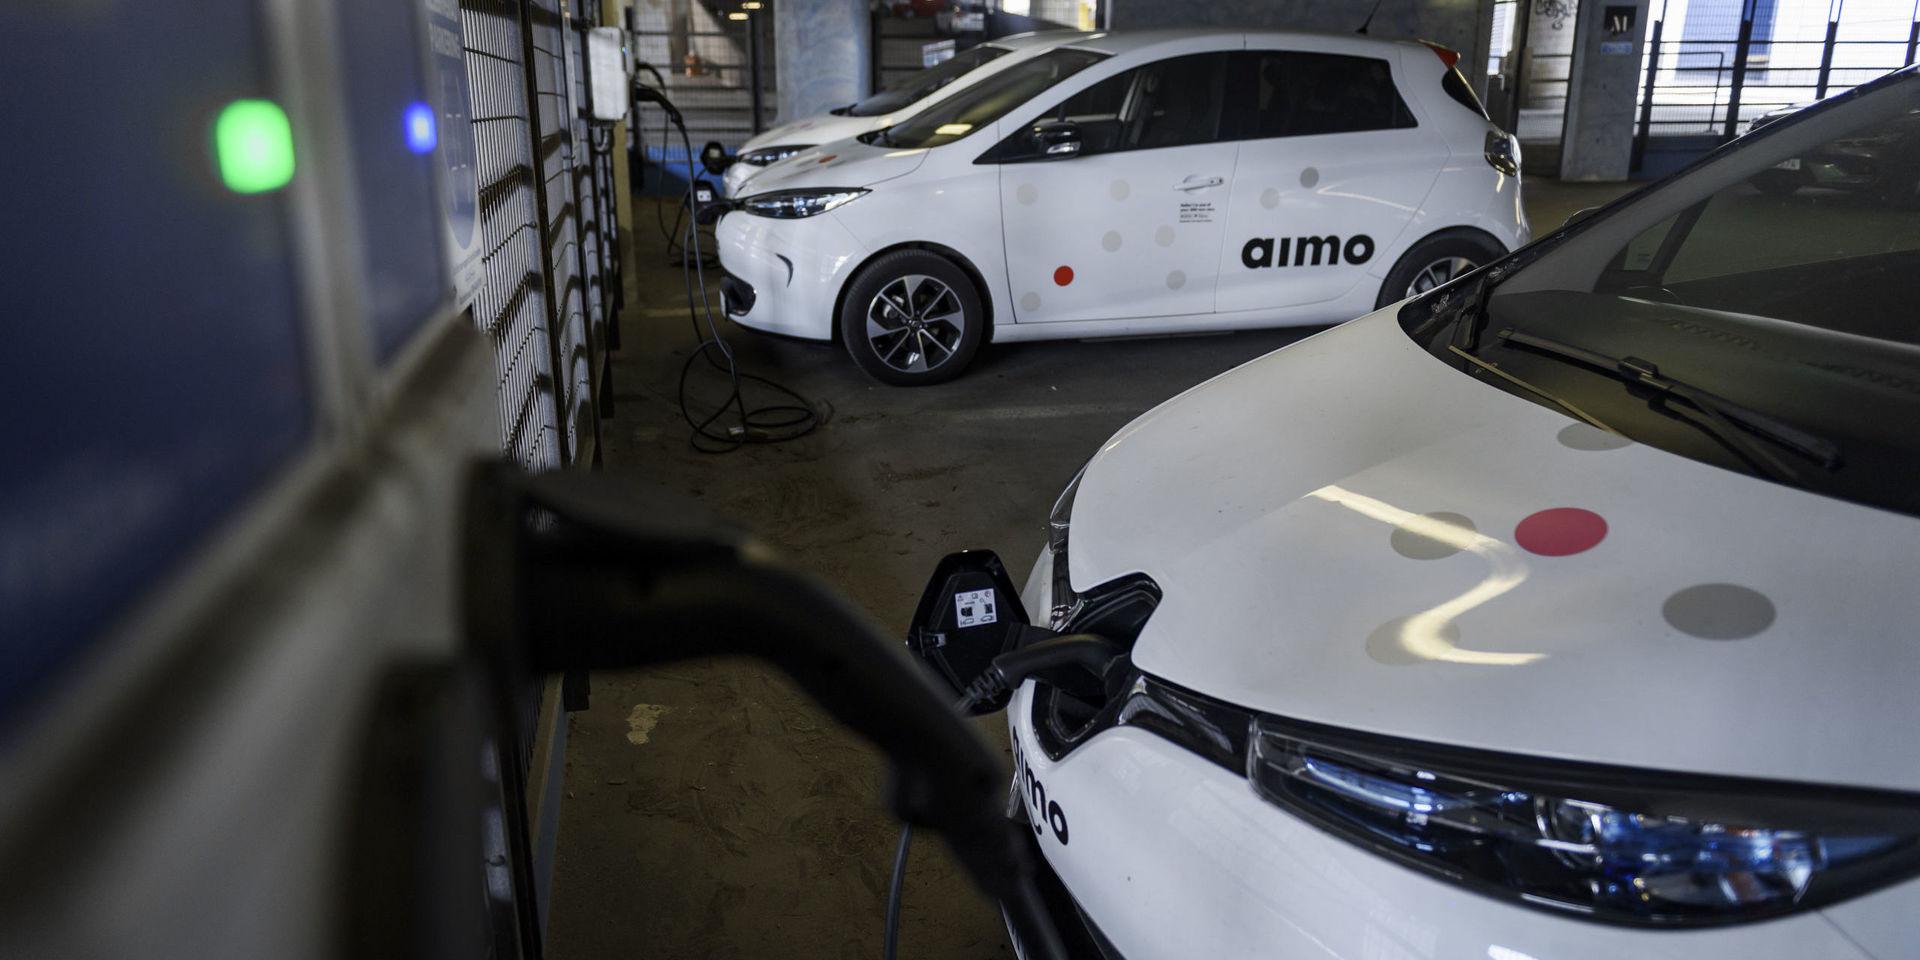 Bilpoolen Aimo har bara elbilar i sitt stall. På bilden syns några av dem laddas innan användning i ett garage på Kungsholmen i Stockholm.